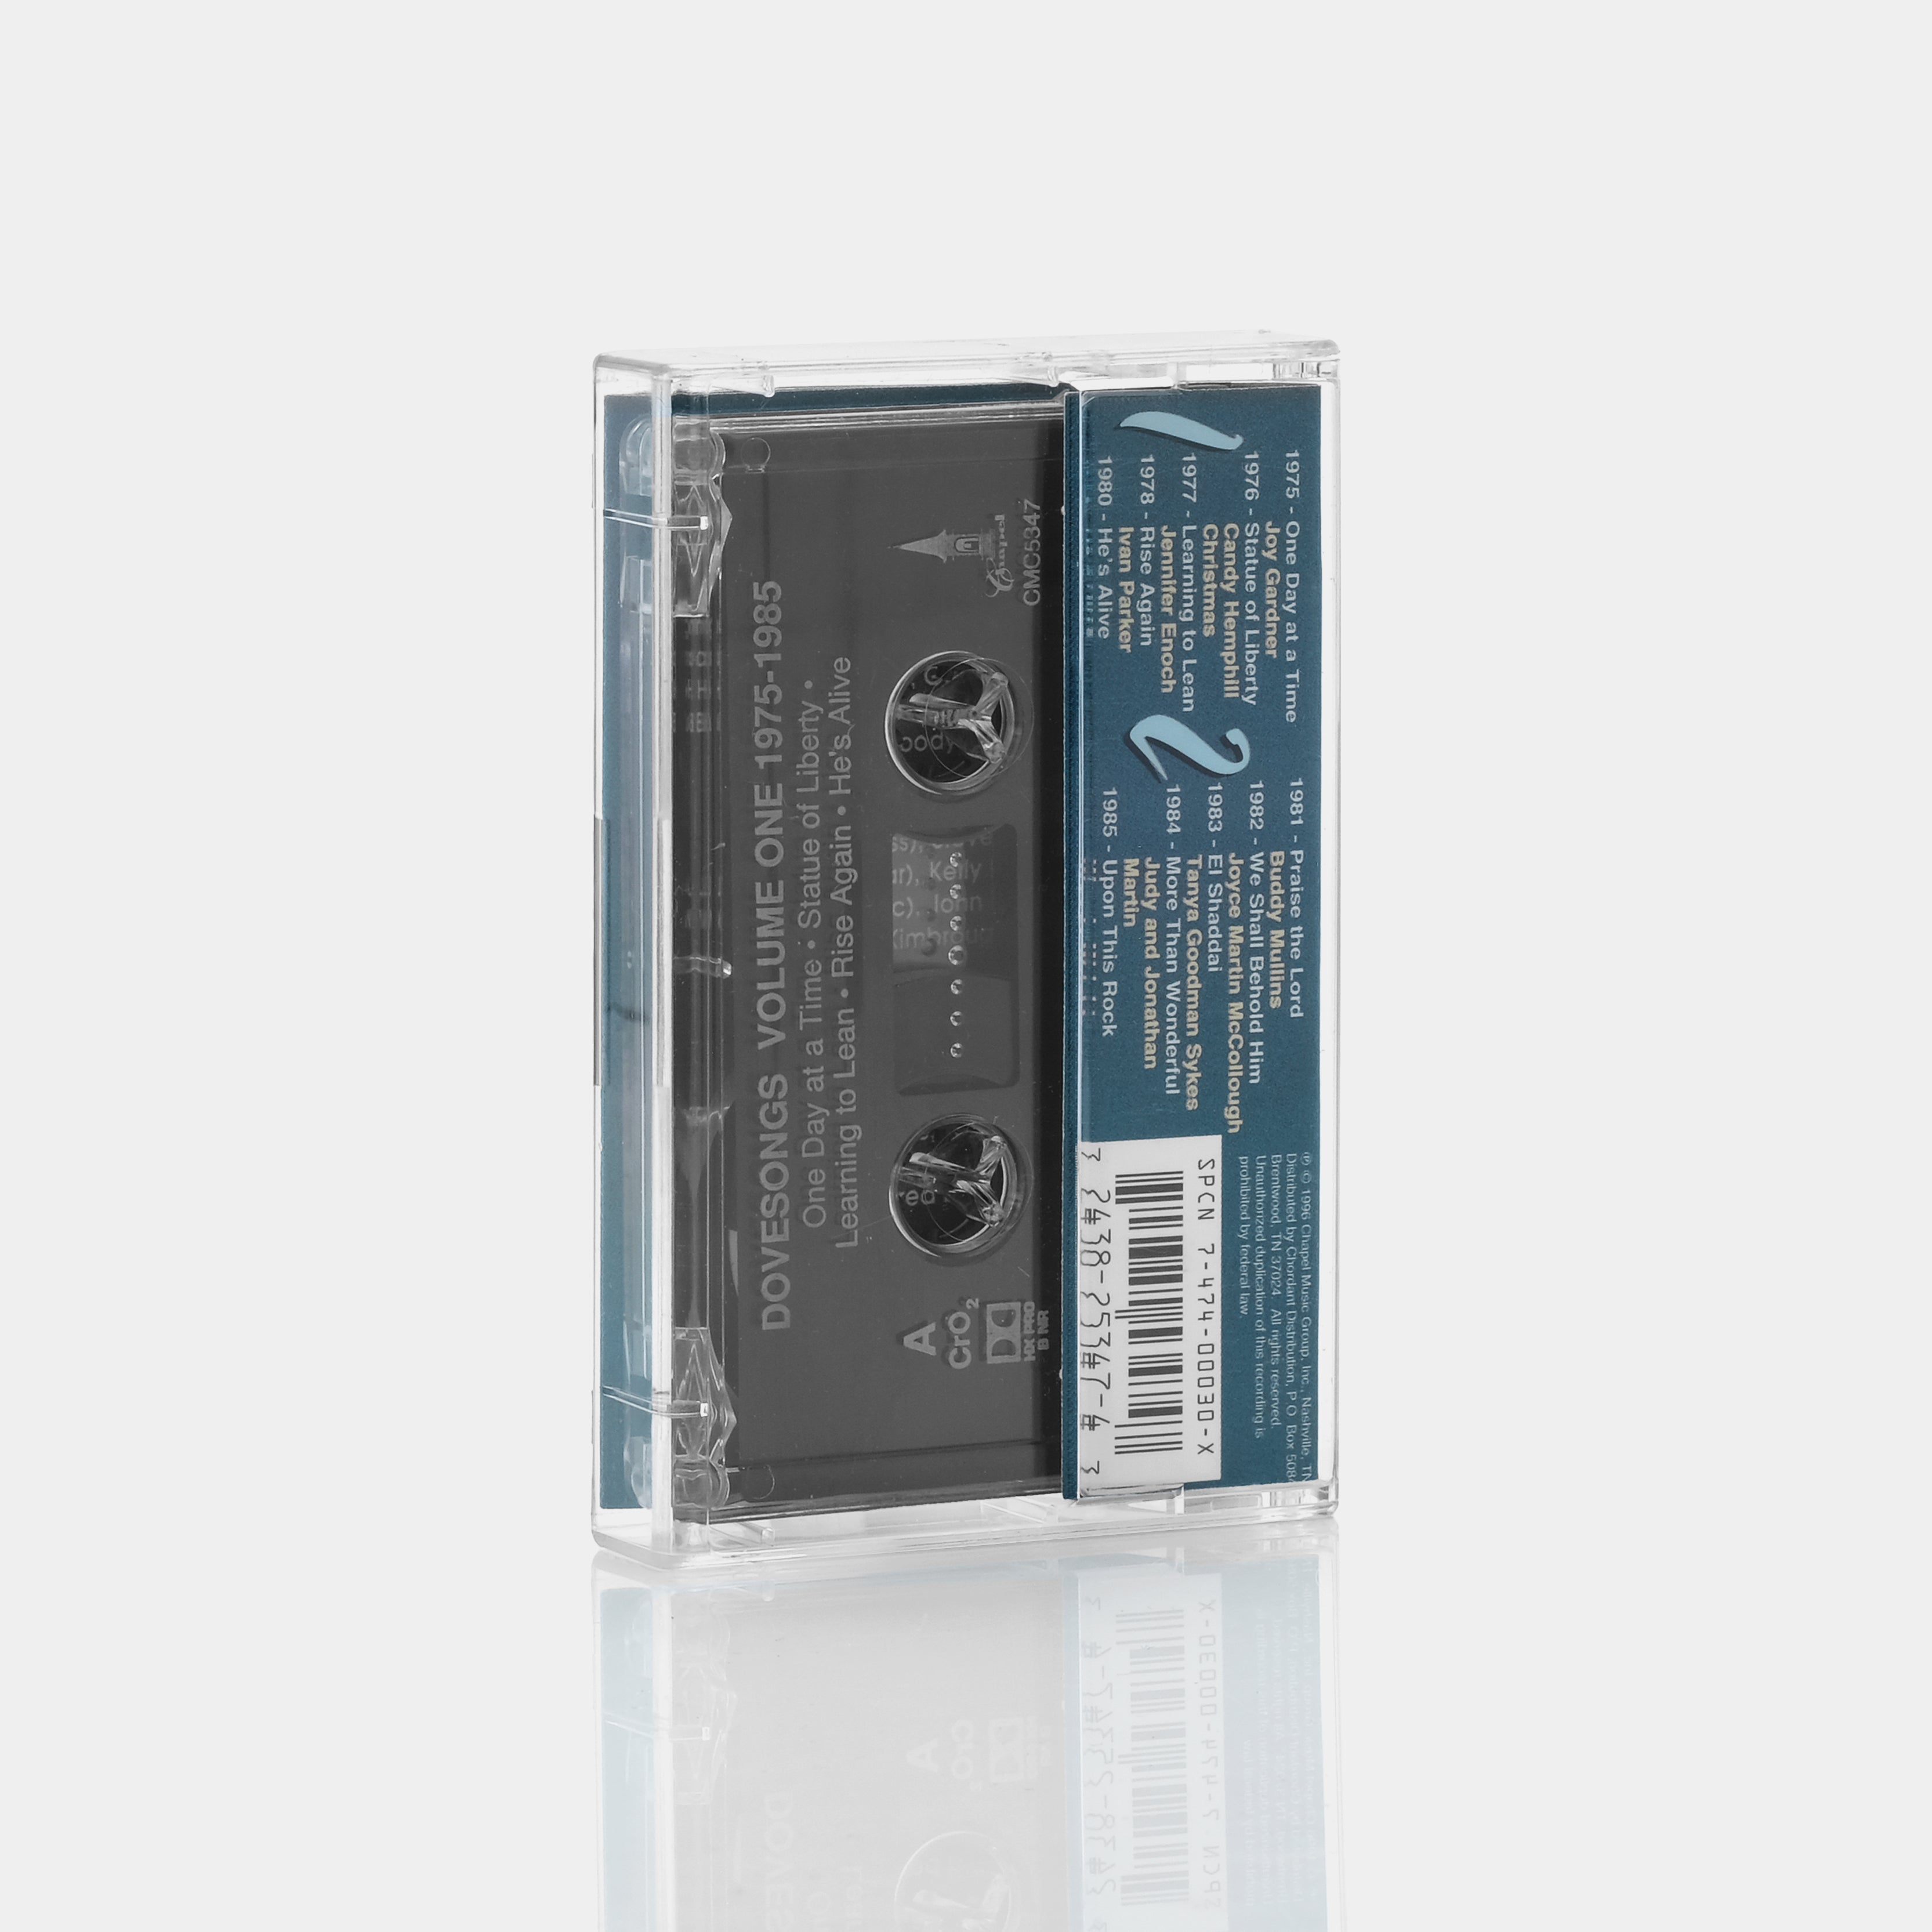 Dovesongs Volume One Cassette Tape